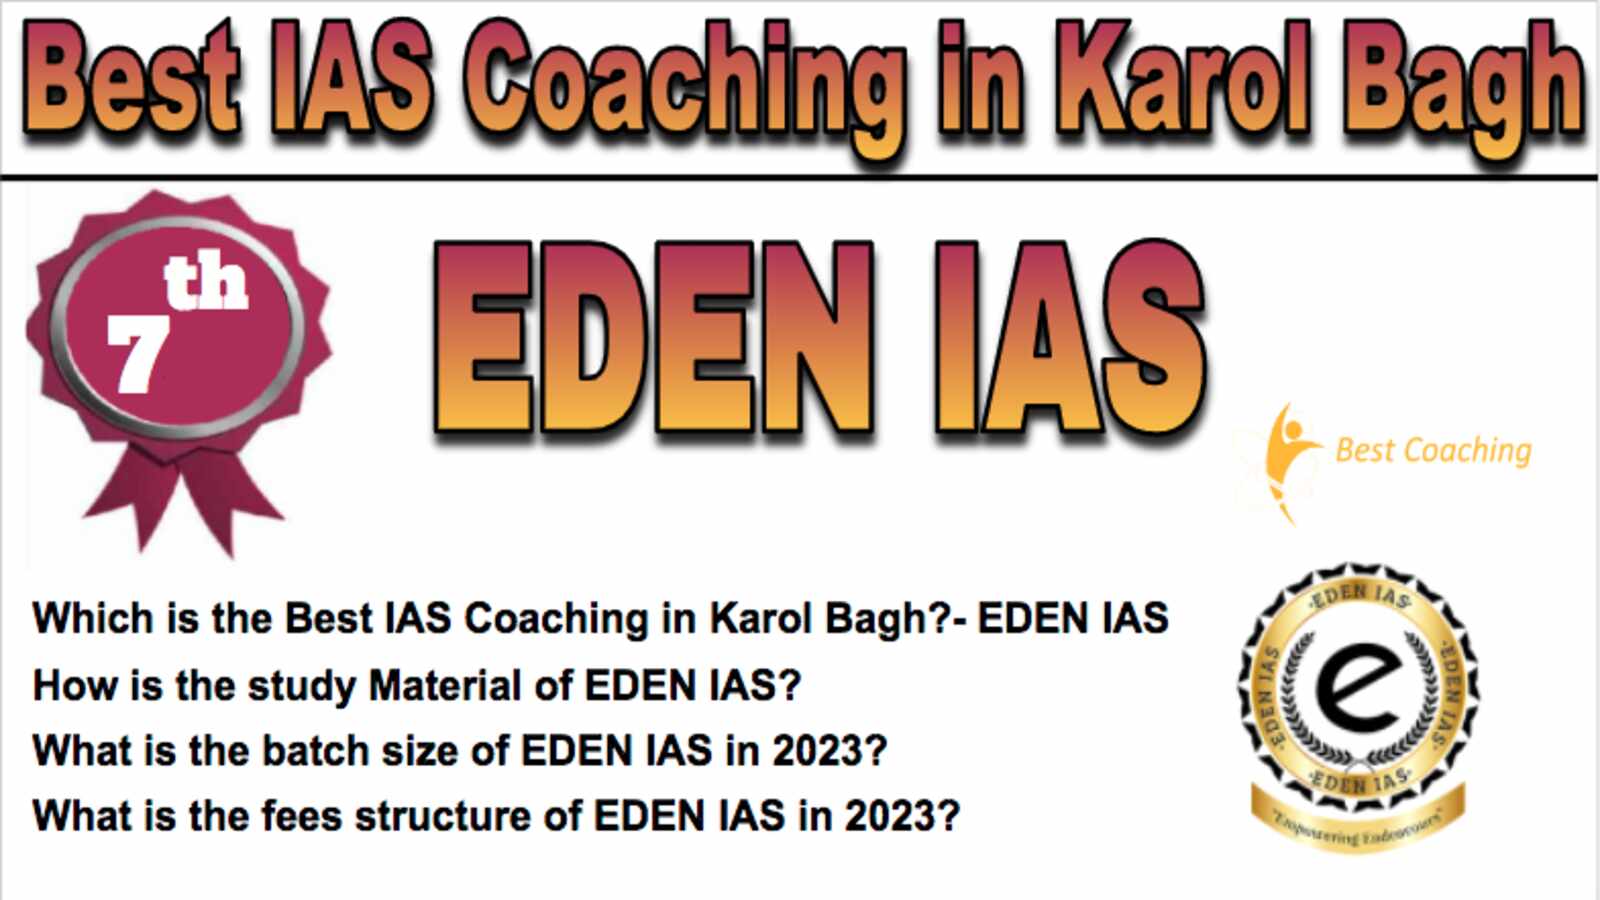 7th Best IAS Coaching in Karol Bagh